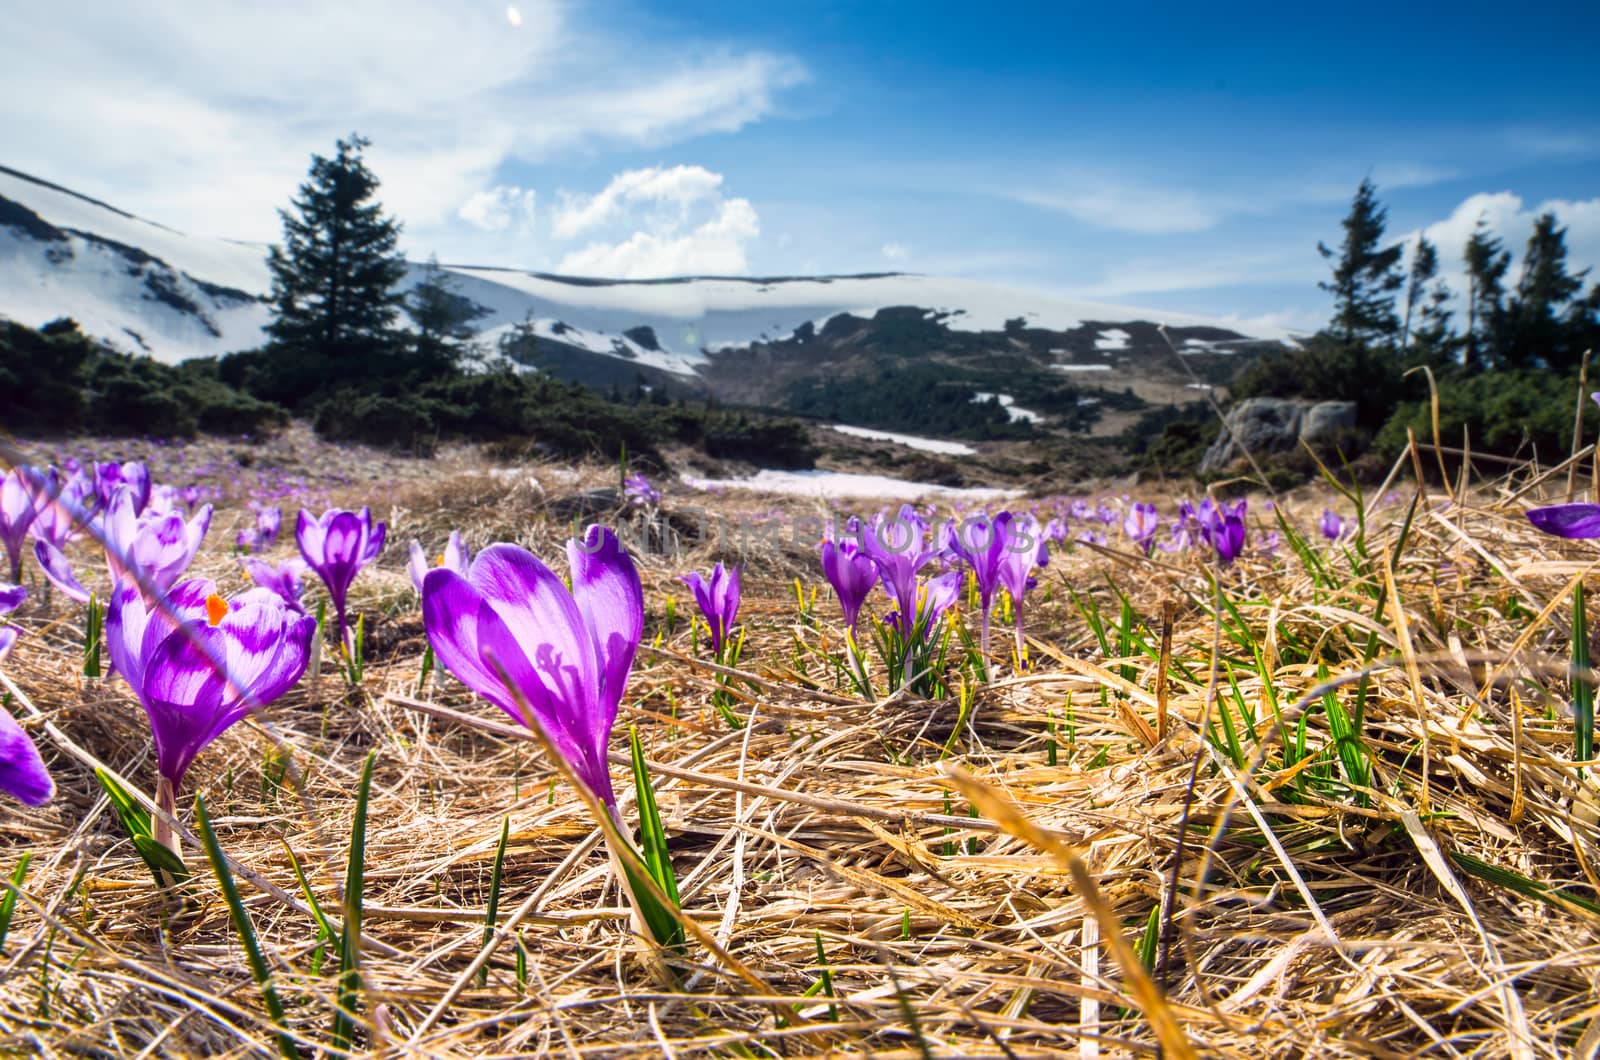 Spring flowers. Blooming violet crocuses in mountains.